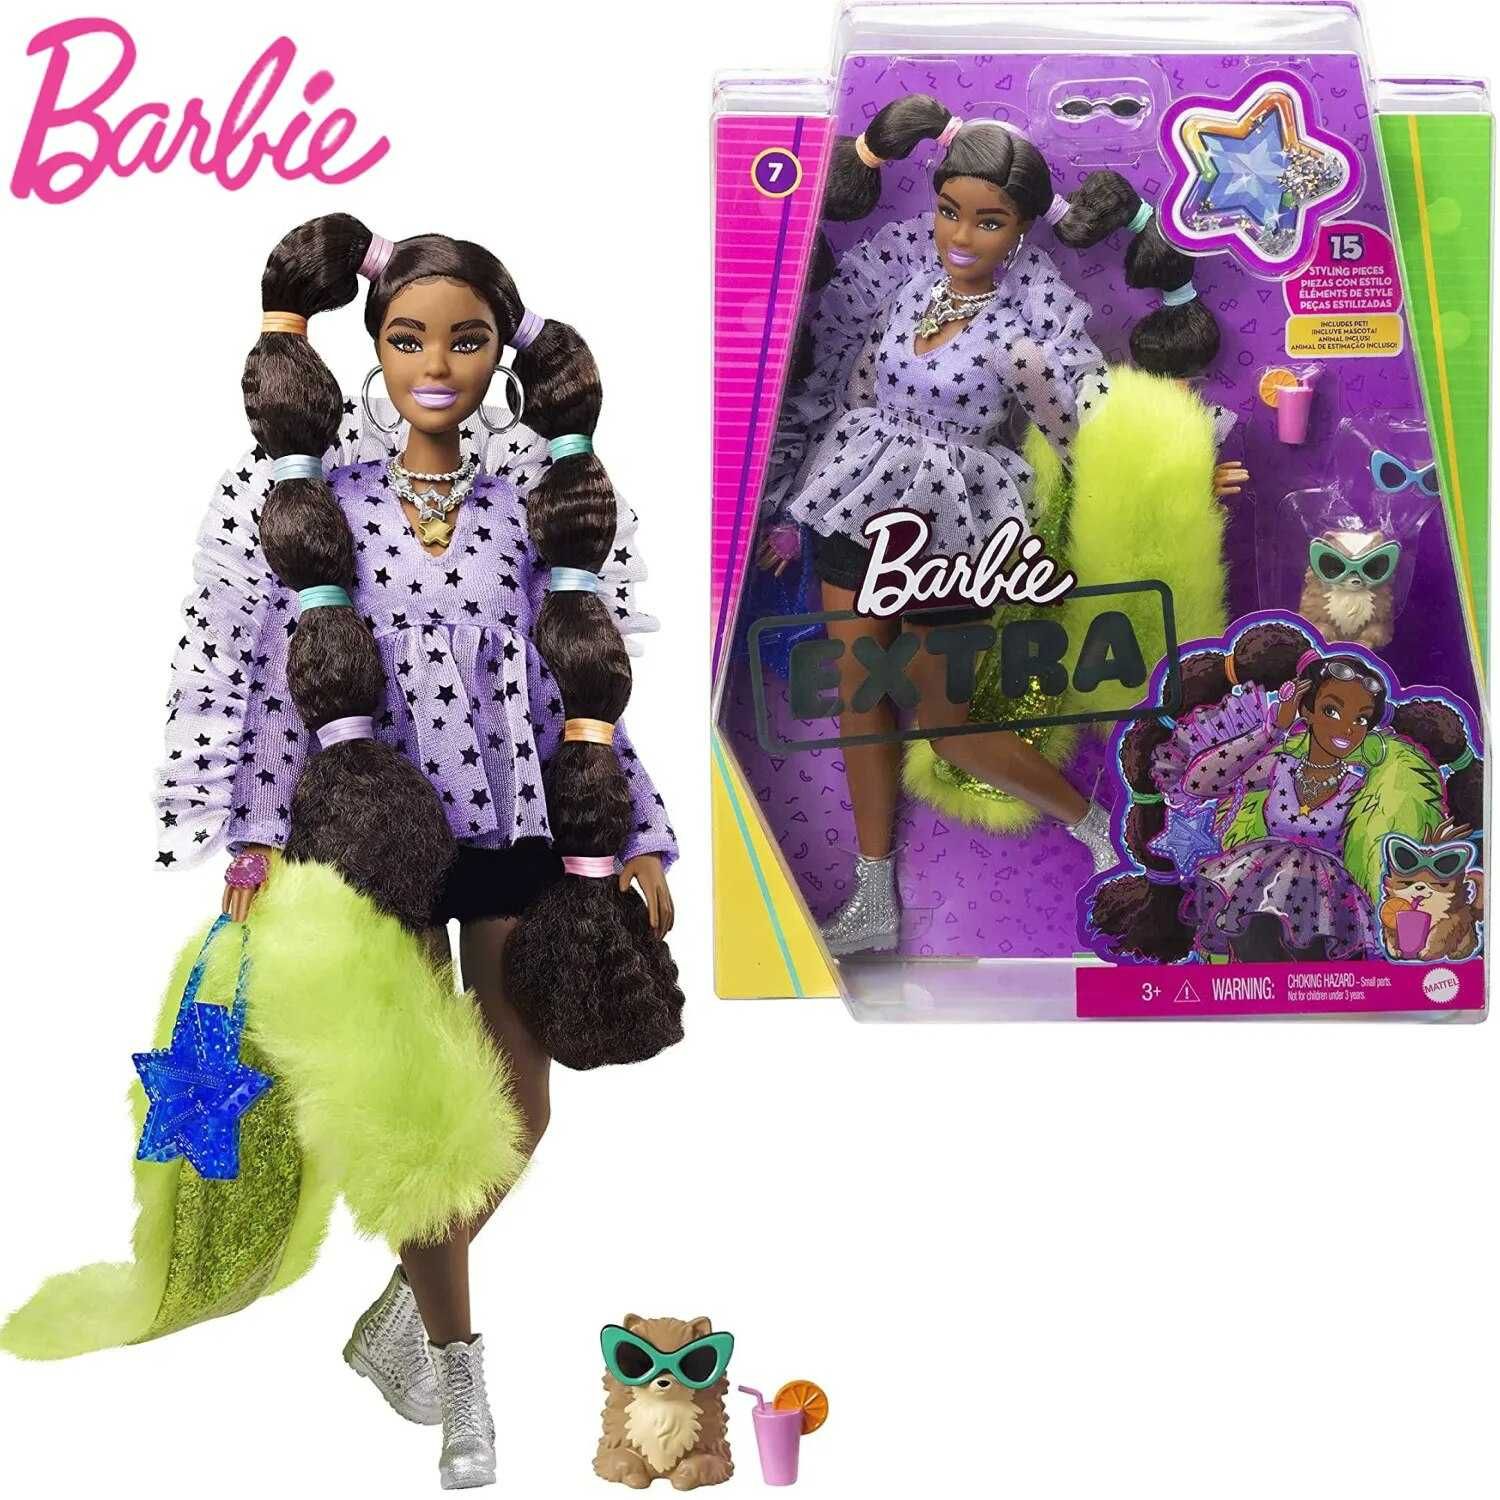 Ляльки Barbie Extra. Оригінал.